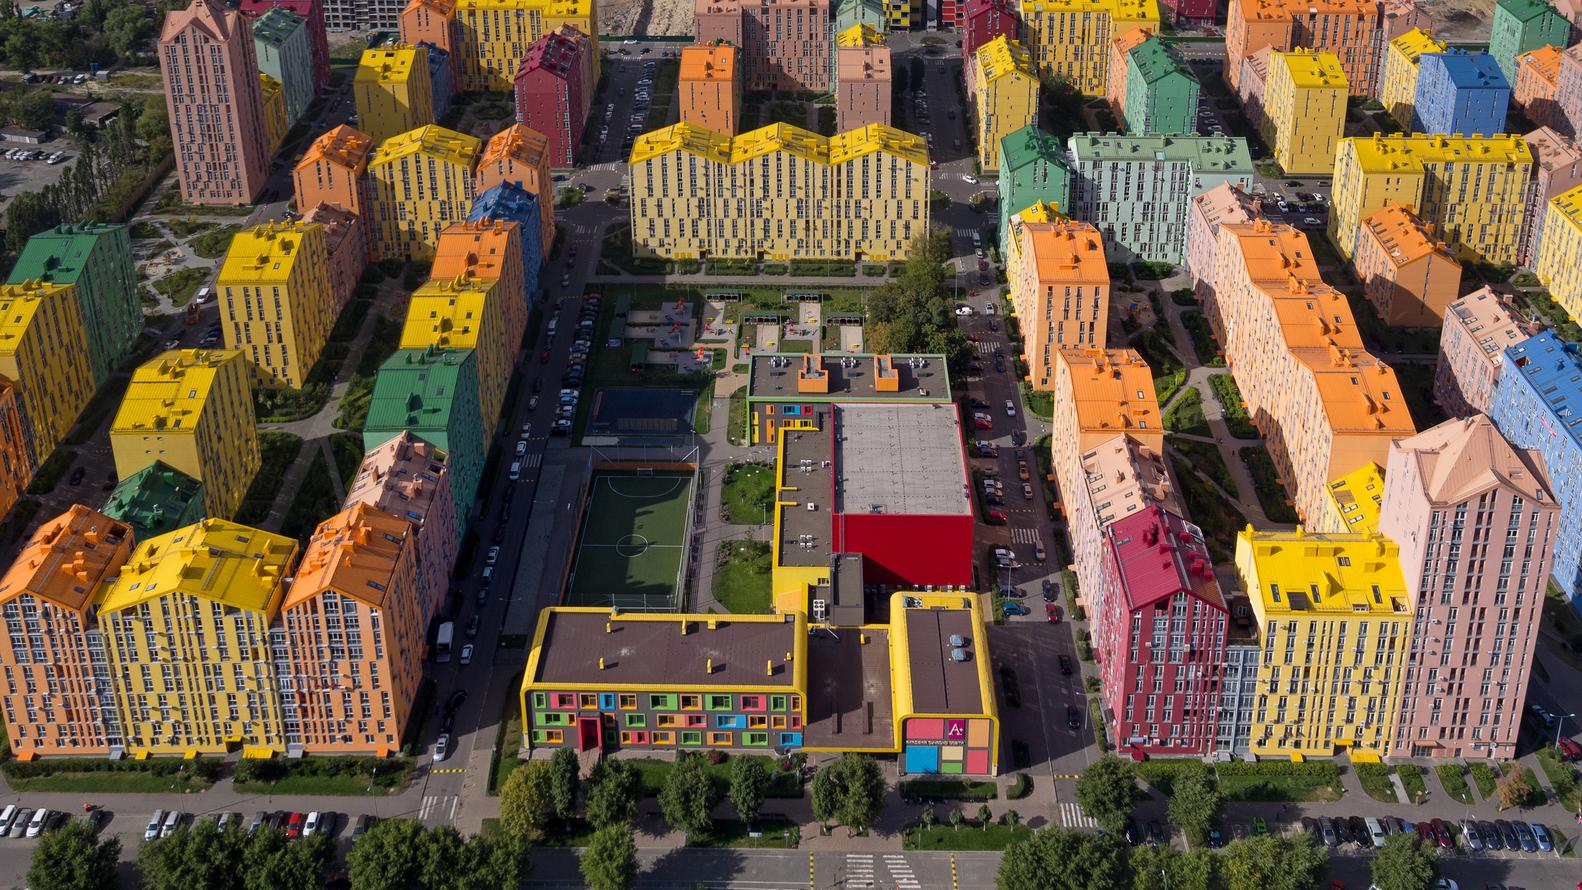 【烏克蘭首個區塊開發住宅區】前工業區大變身 成新一代舒適住宅的標準